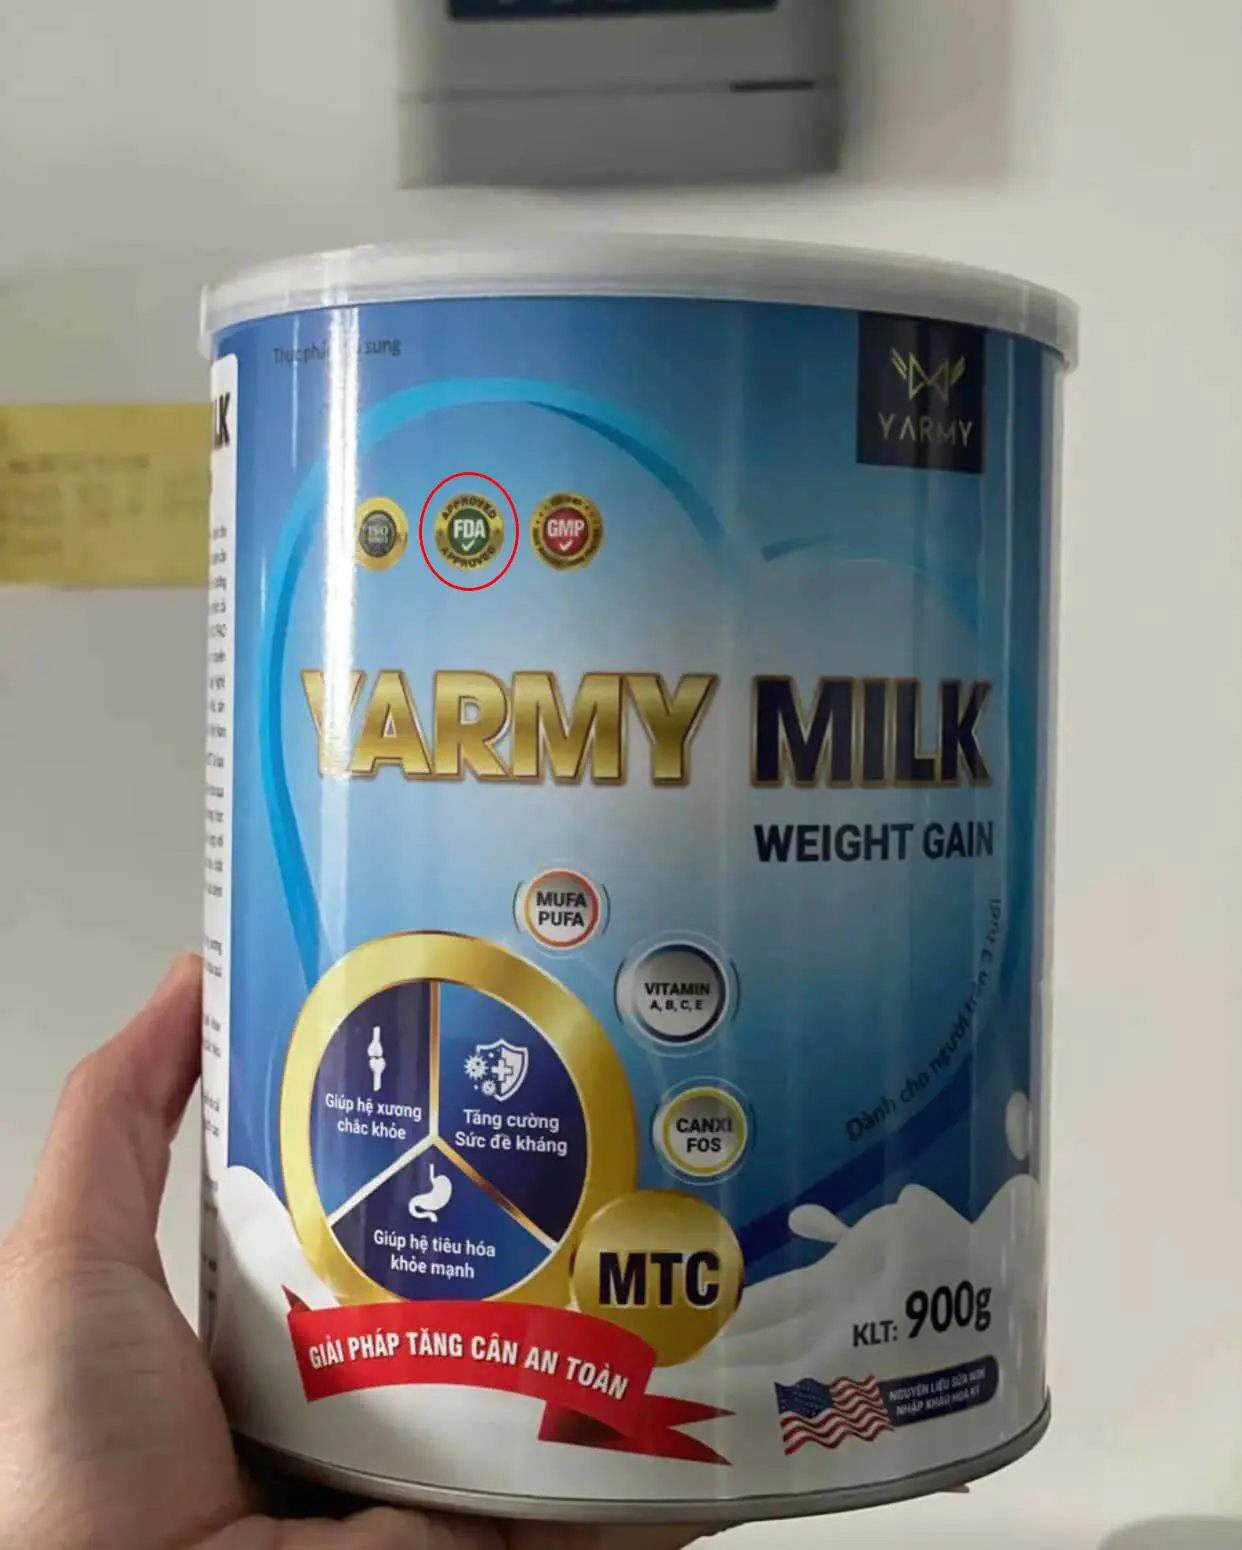 Đánh giá về vị ngon và hương thơm của sữa Yarmy Milk